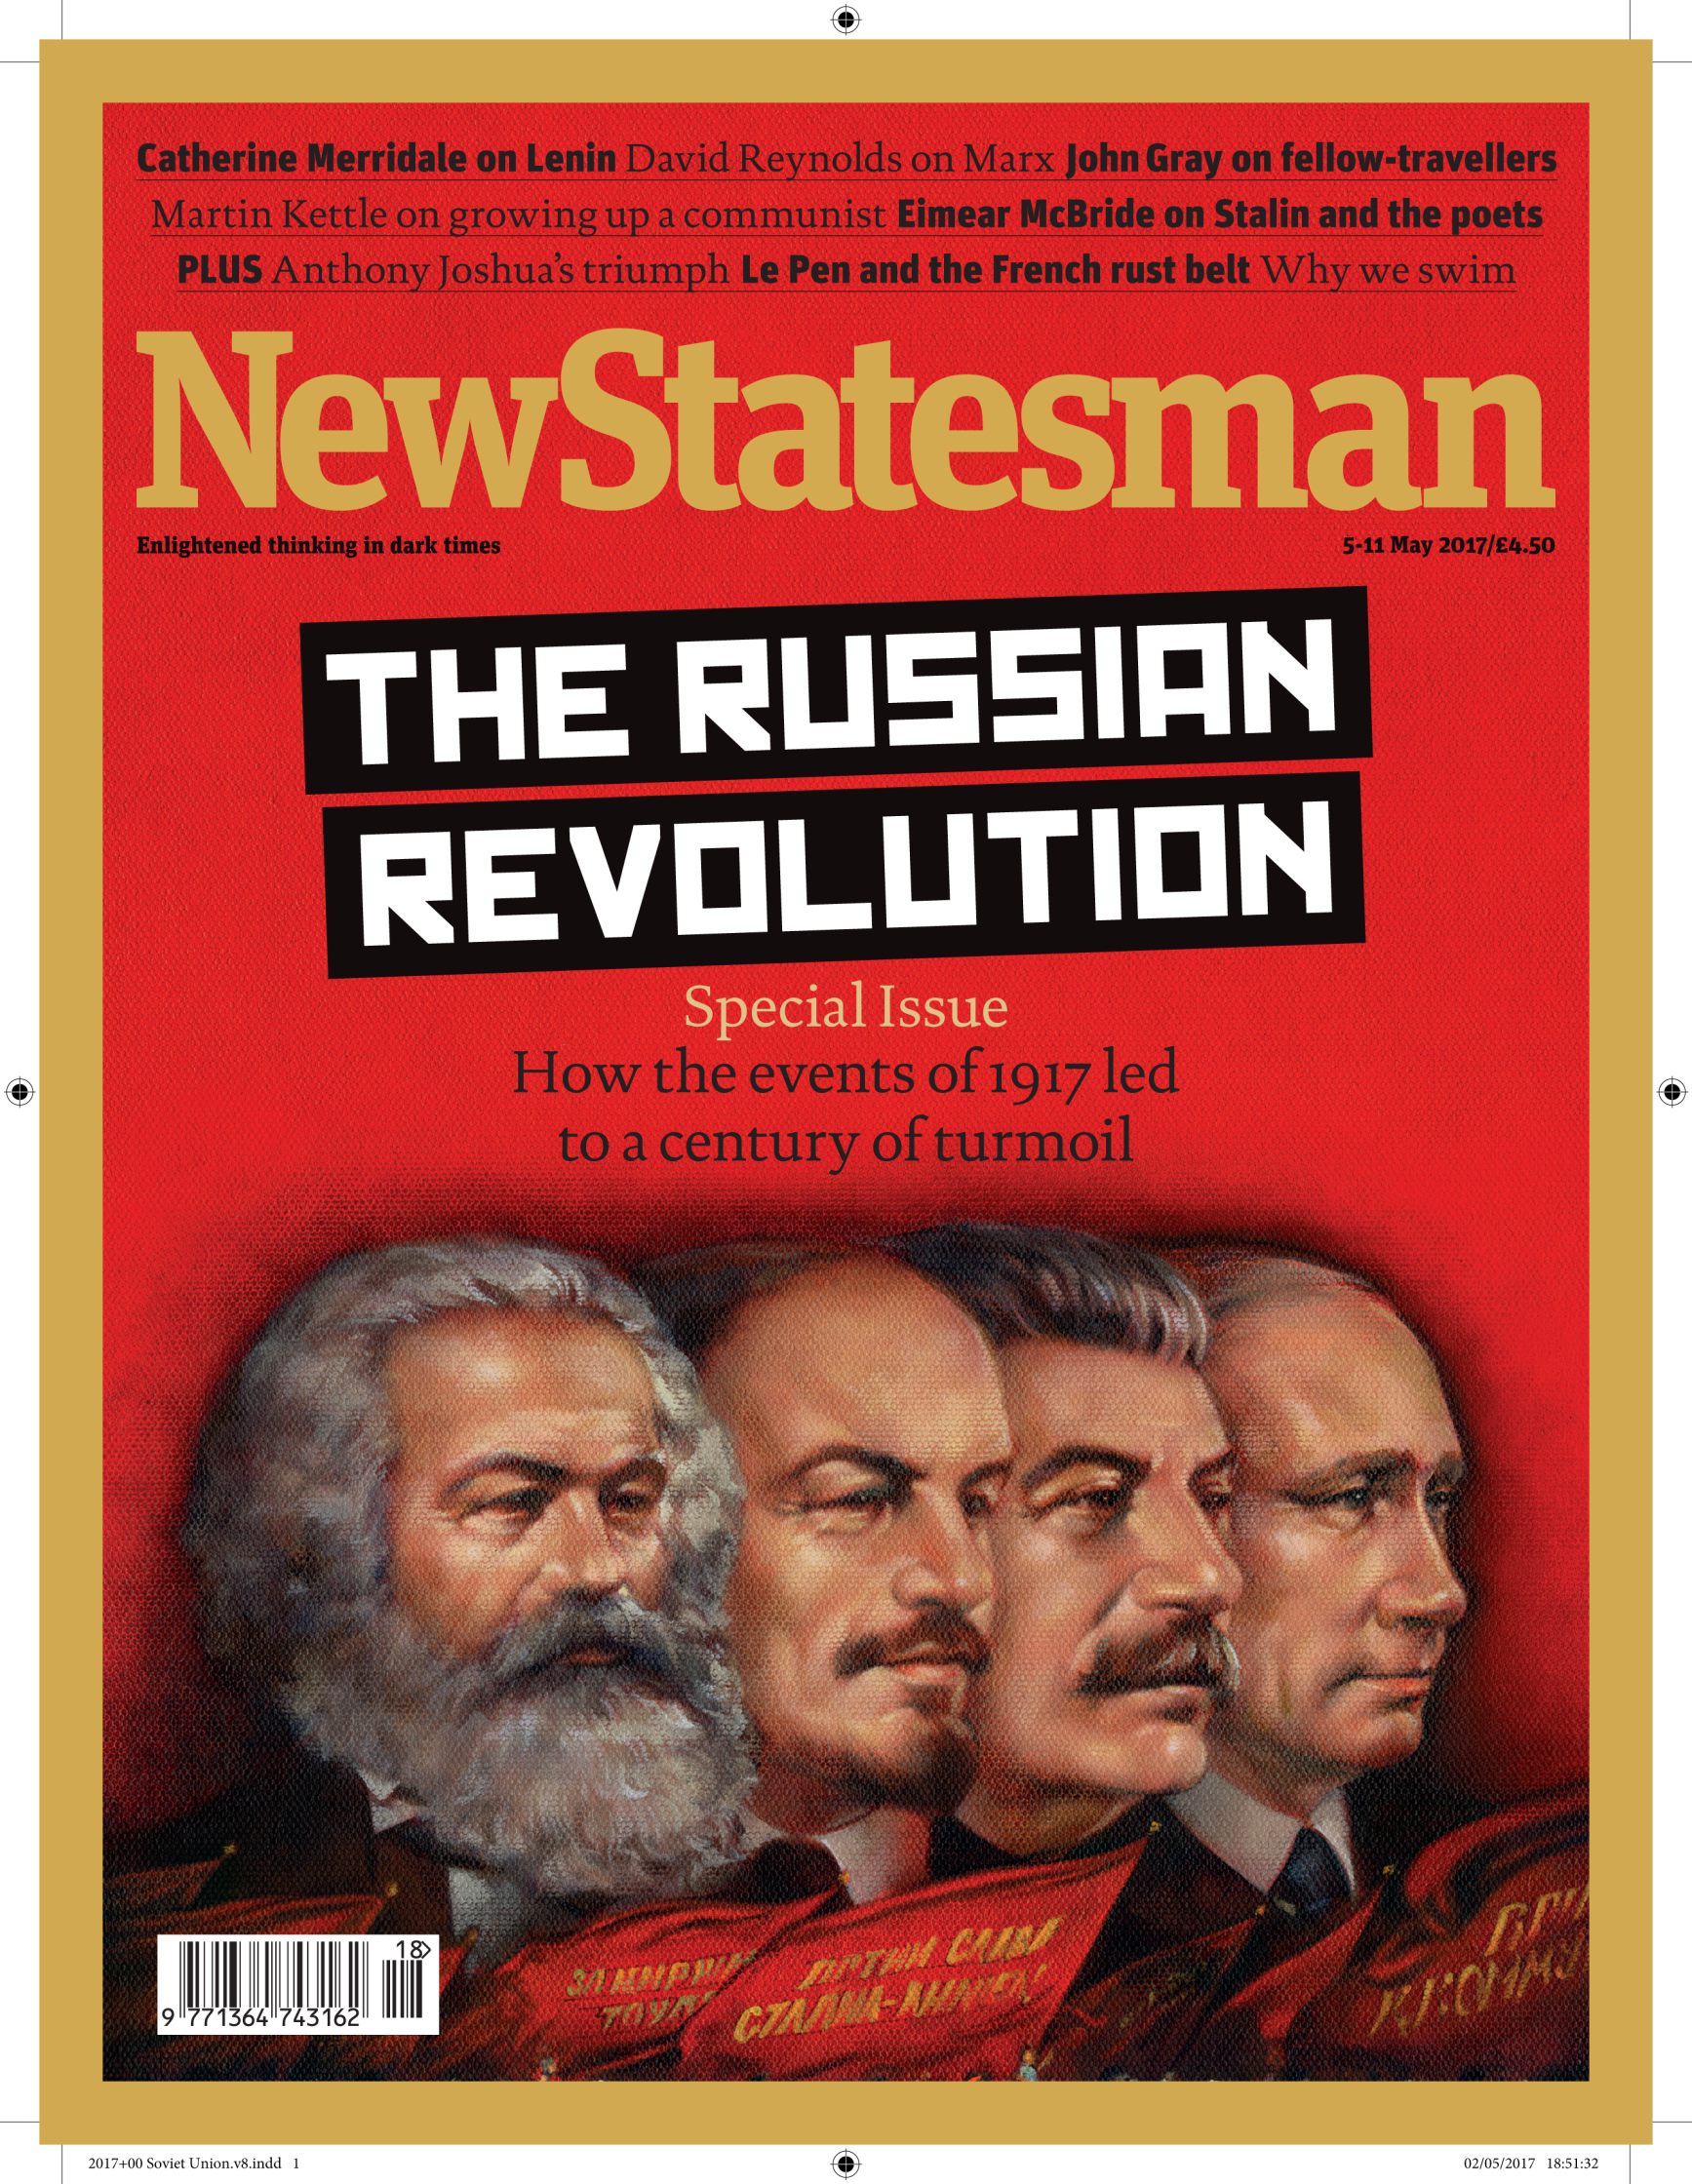 01 Russian Revolution.jpg